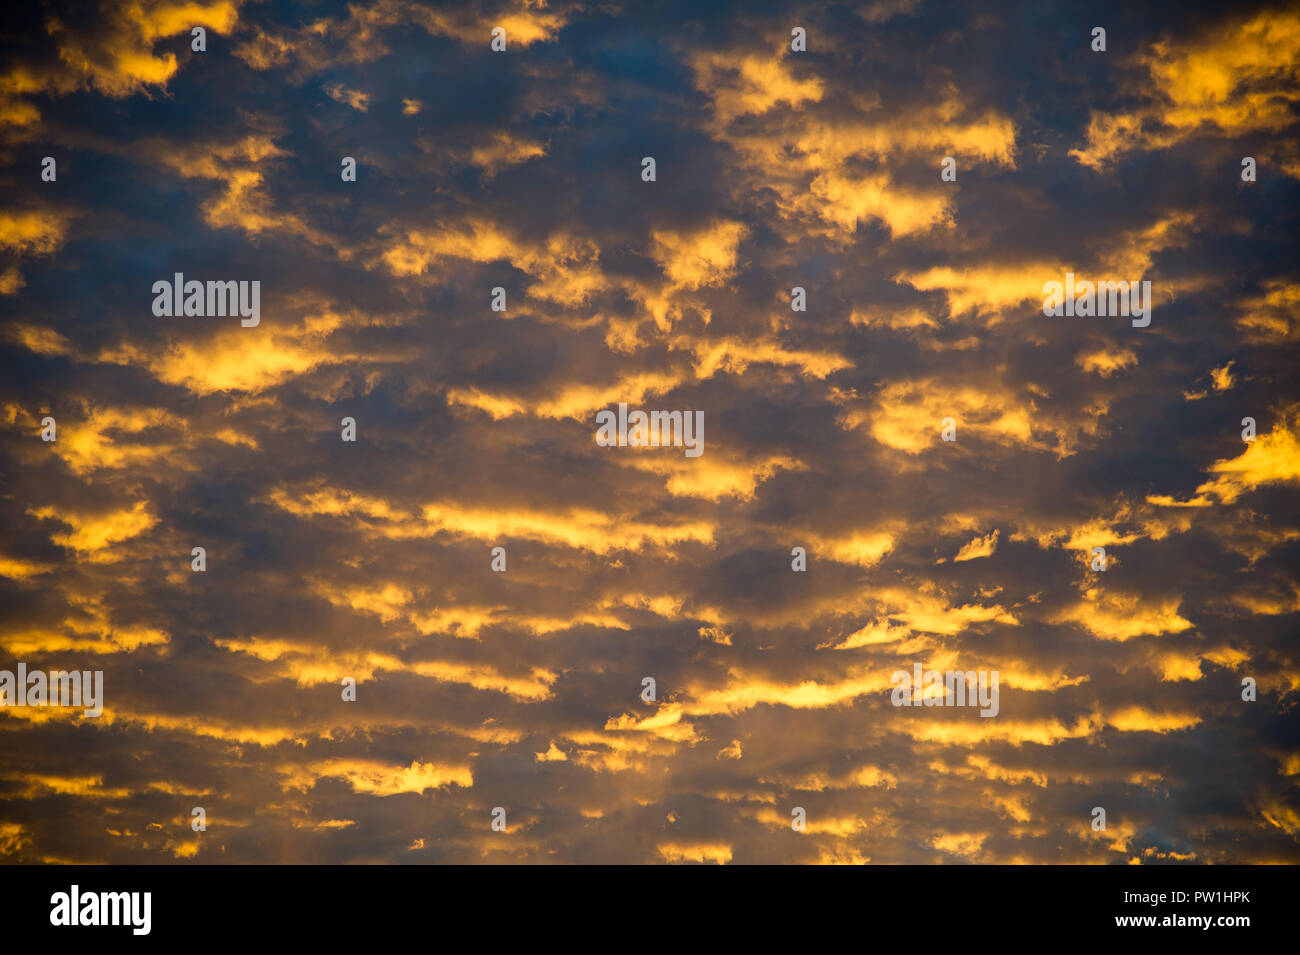 Clouds in Gdansk, Poland. September 30th 2018 © Wojciech Strozyk / Alamy Stock Photo Stock Photo